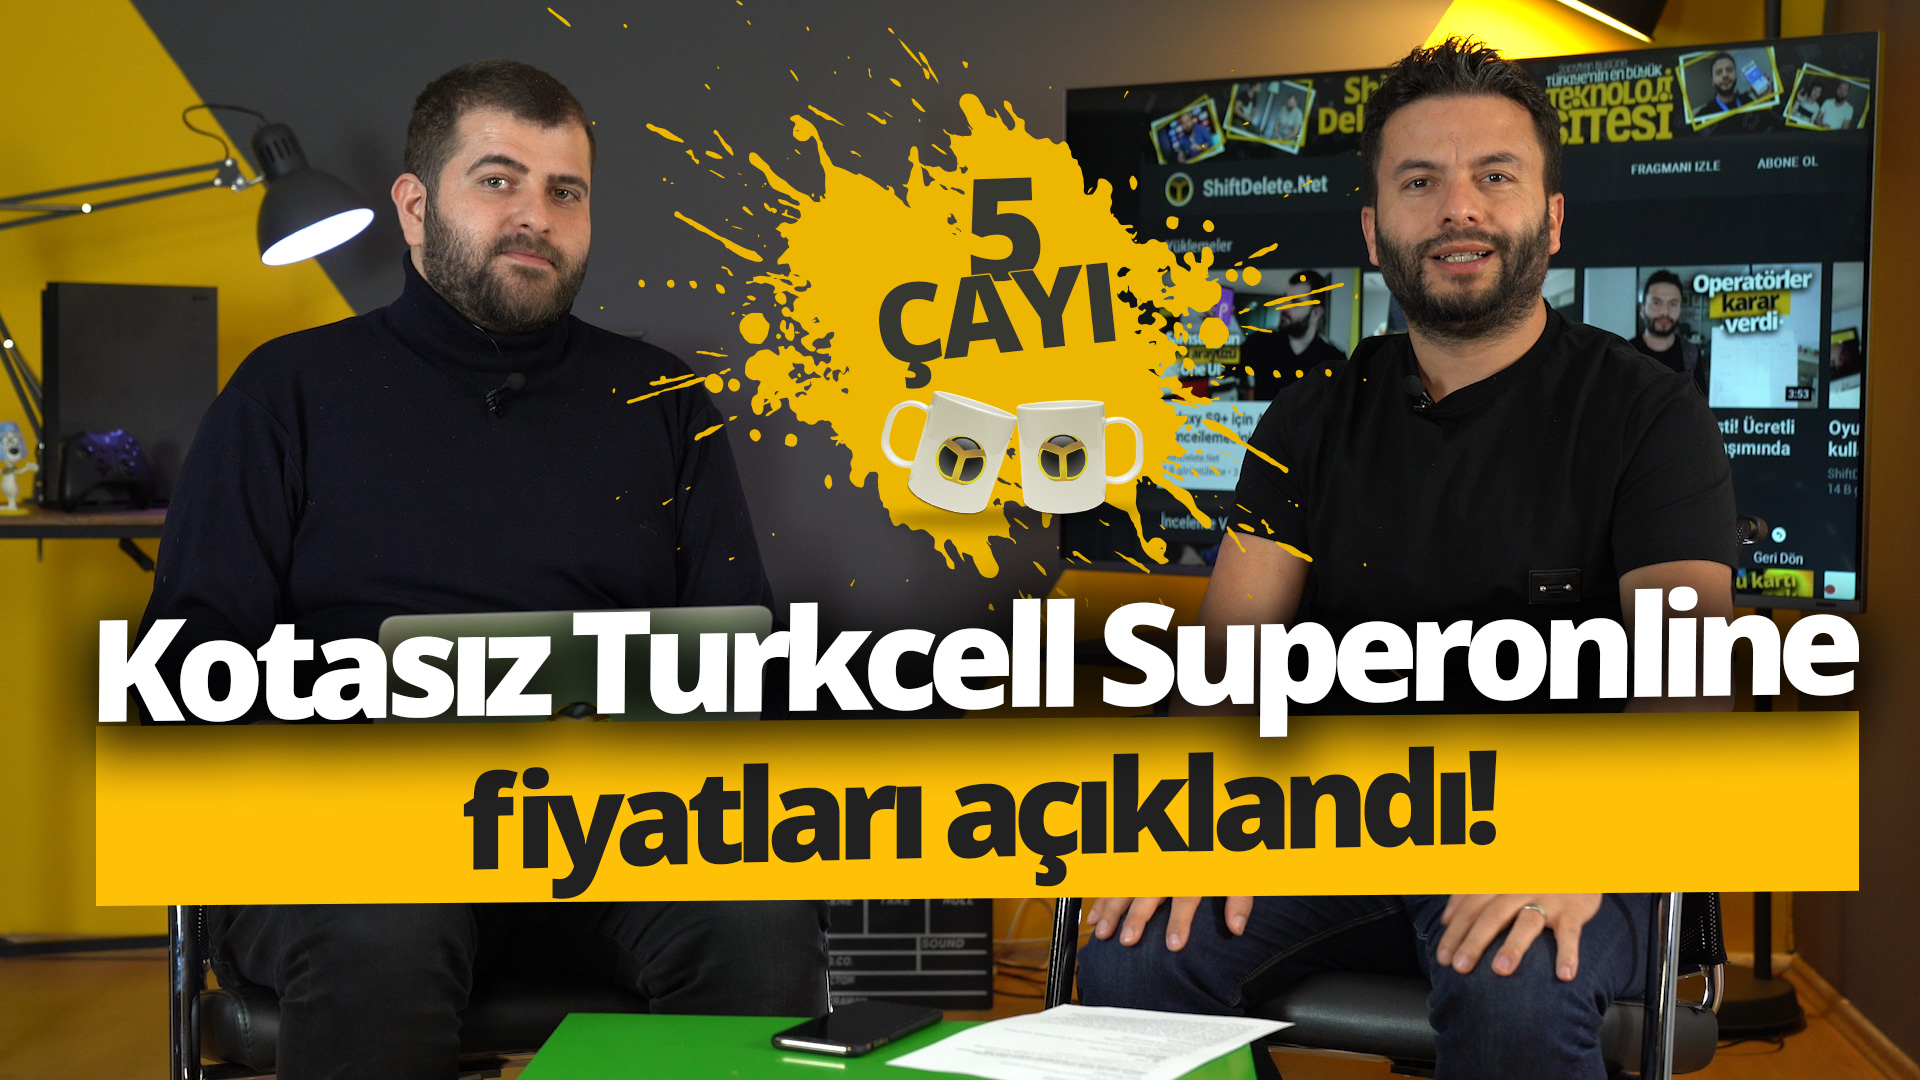 AKN’siz Turkcell Superonline fiyatları! – 5 Çayı # 203